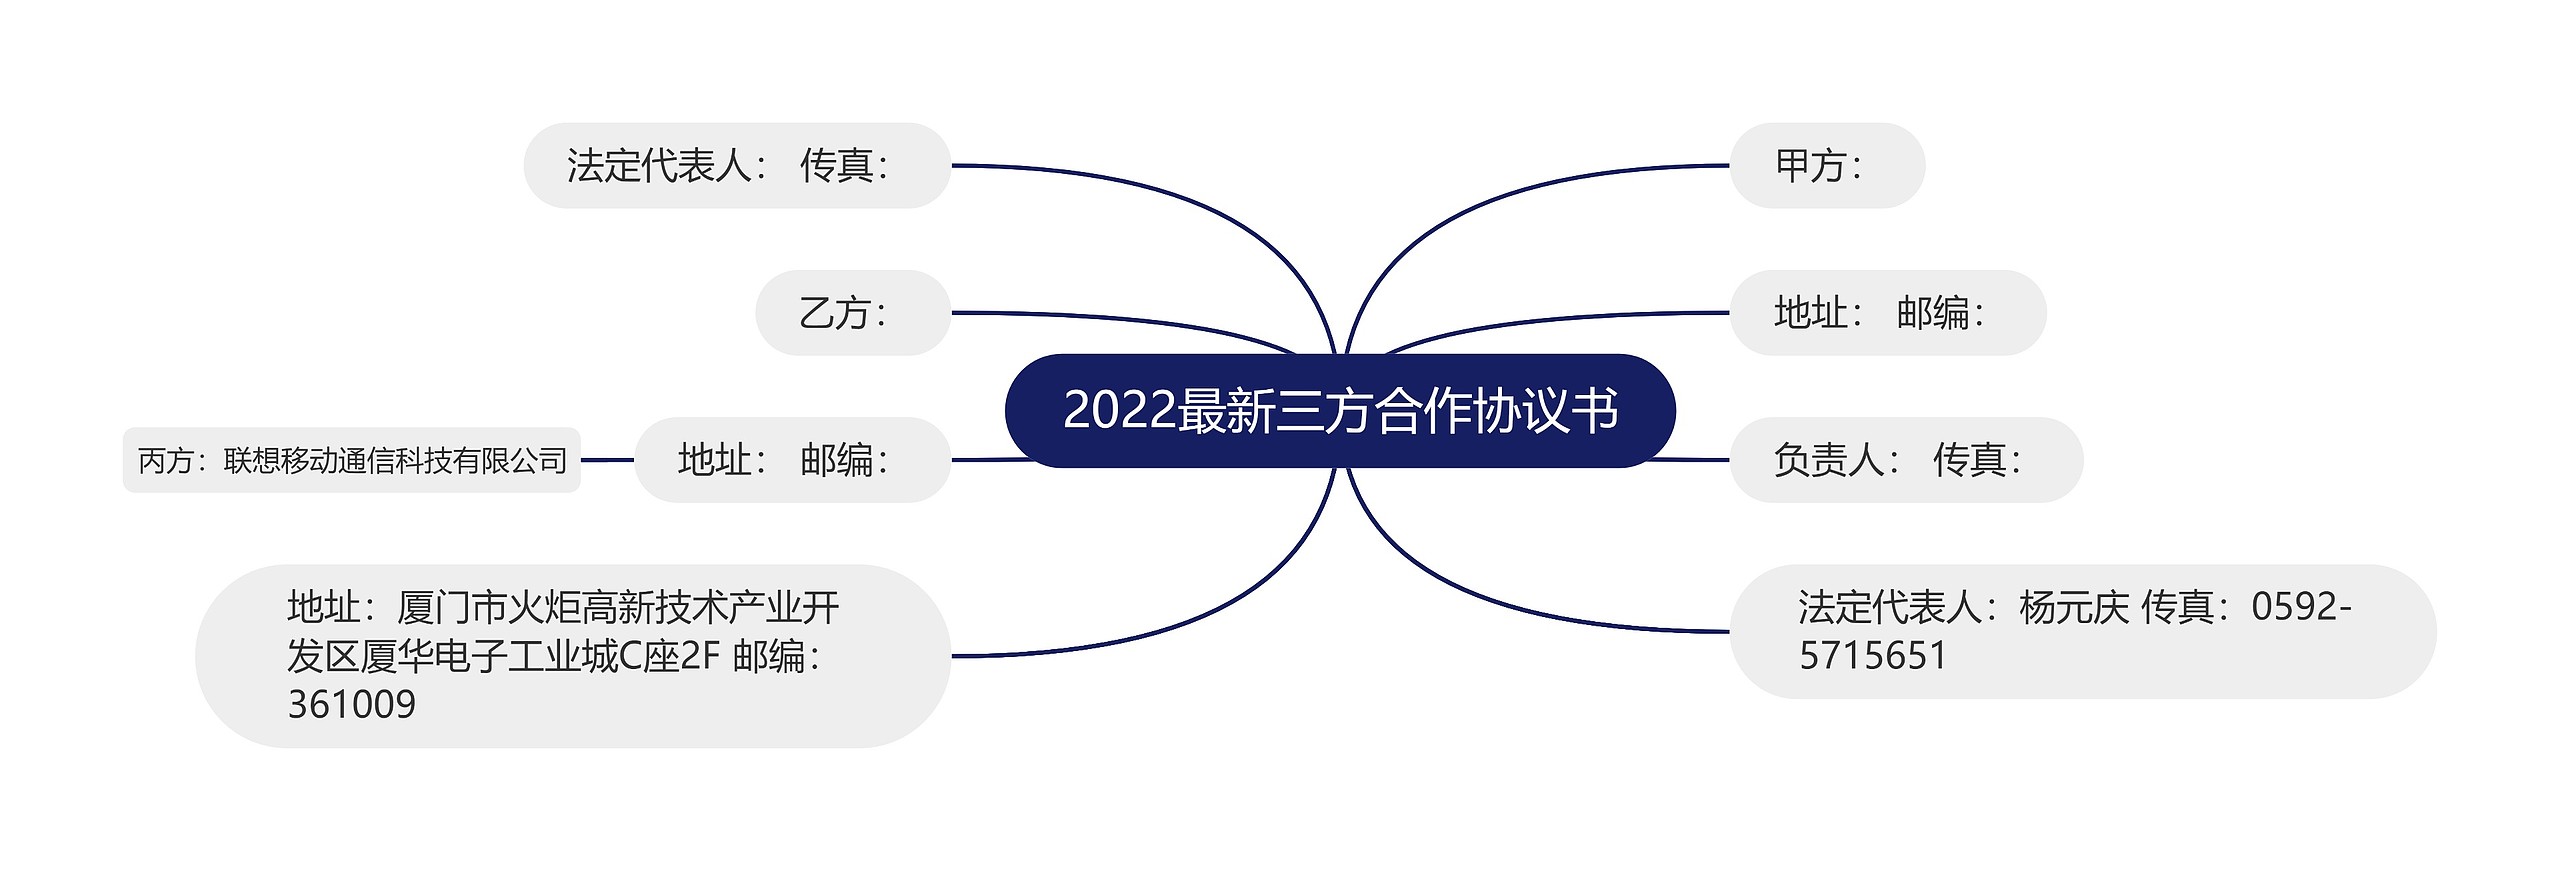 2022最新三方合作协议书思维导图